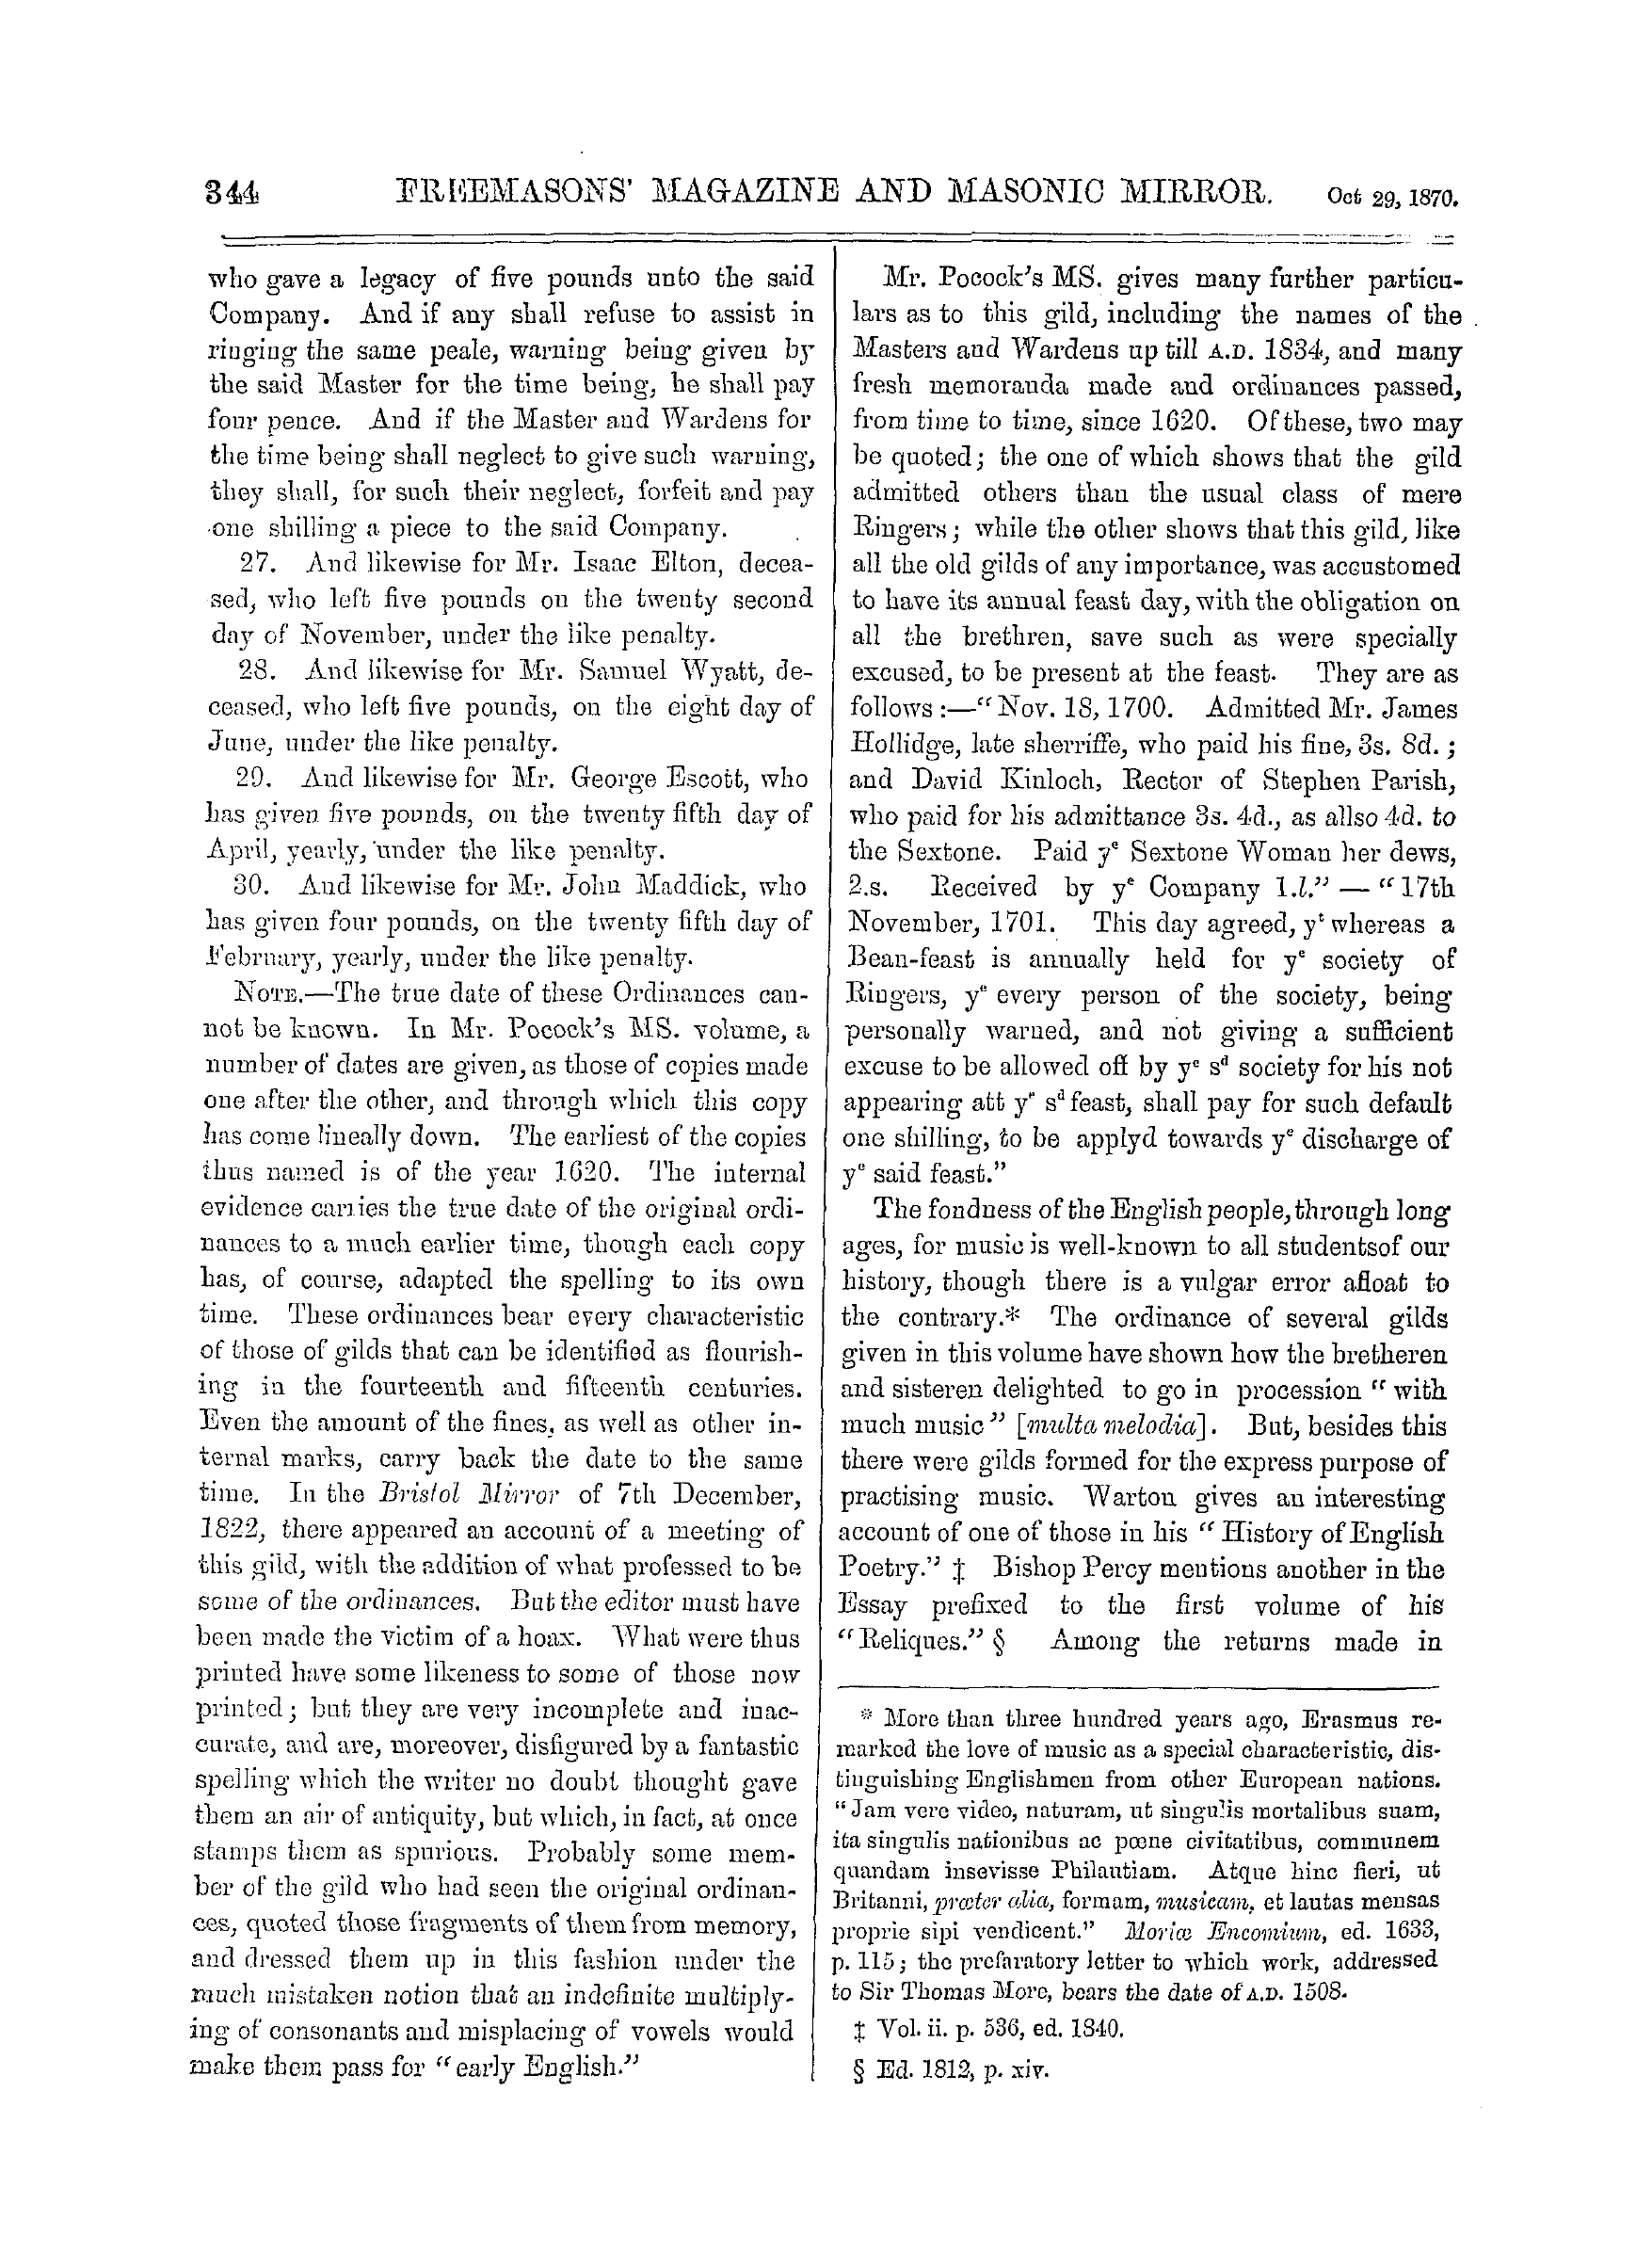 The Freemasons' Monthly Magazine: 1870-10-29 - English Gilds. *